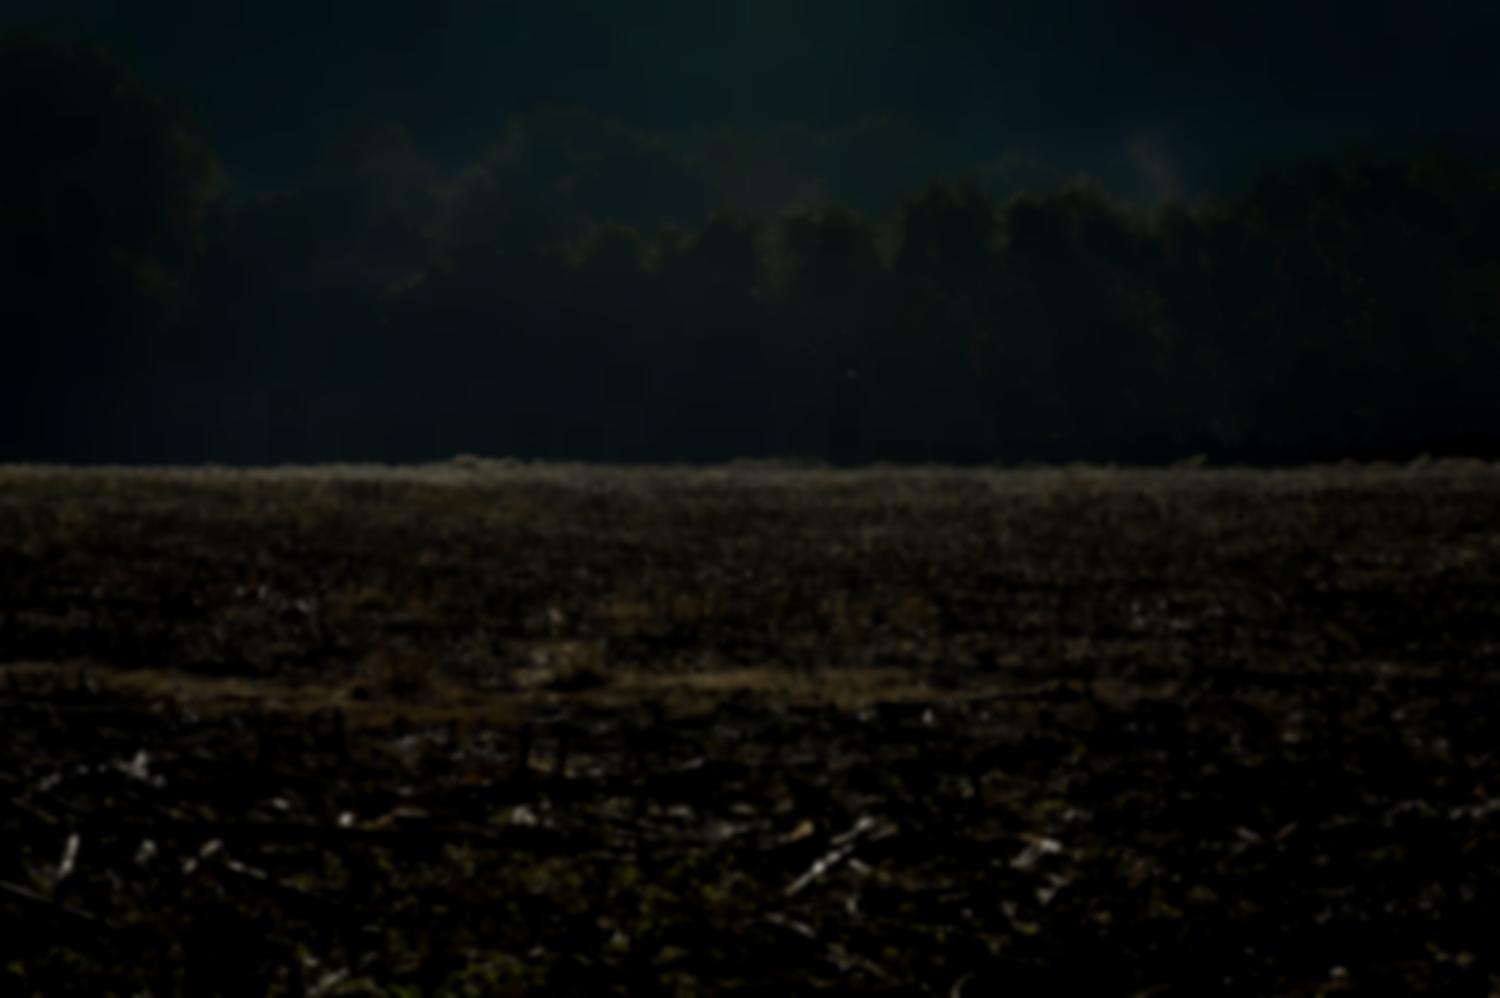 Champ de maïs moissoné, avec des morceaux de cannes à terre, d'où s'élèvent des vapeurs, et au fond un bois vert sombre. Ascain, octobre 2012.